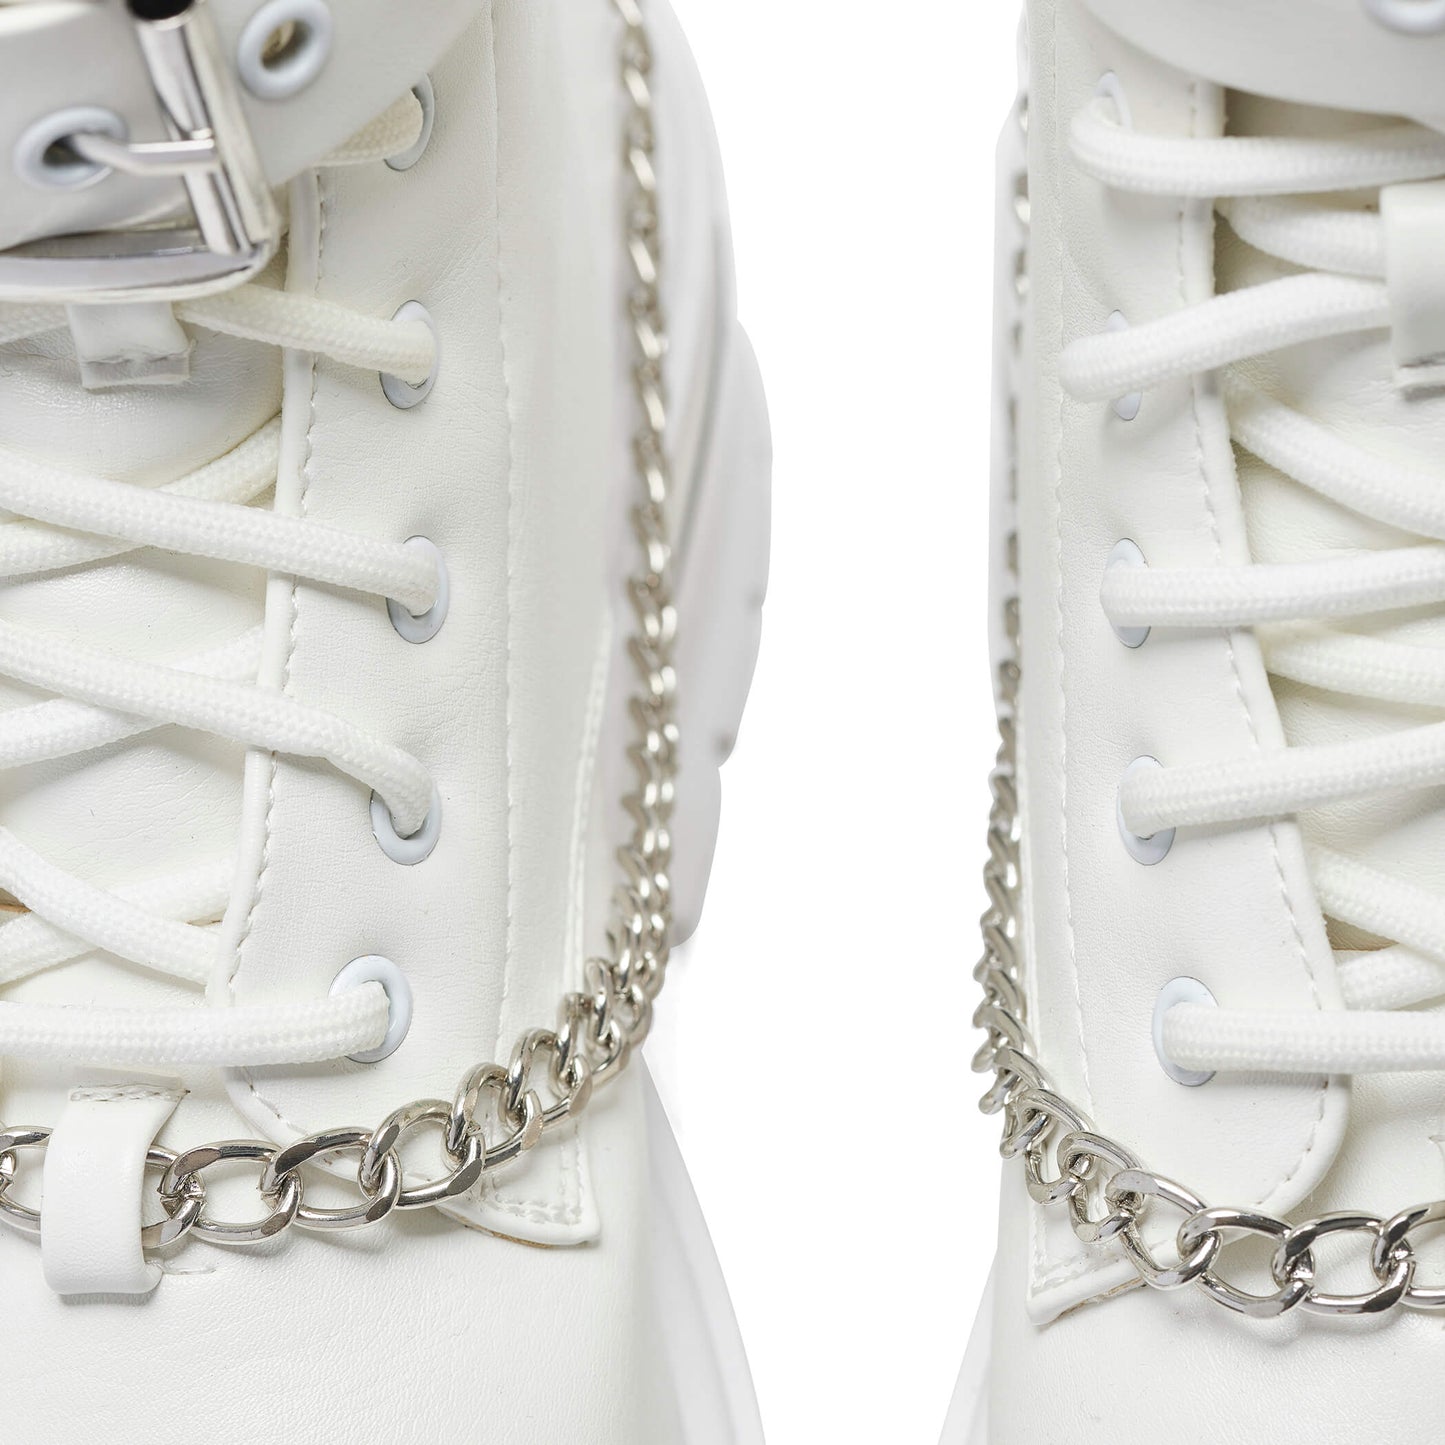 Borin Hardware Platform Boots - White - KOI Footwear - Chain Details